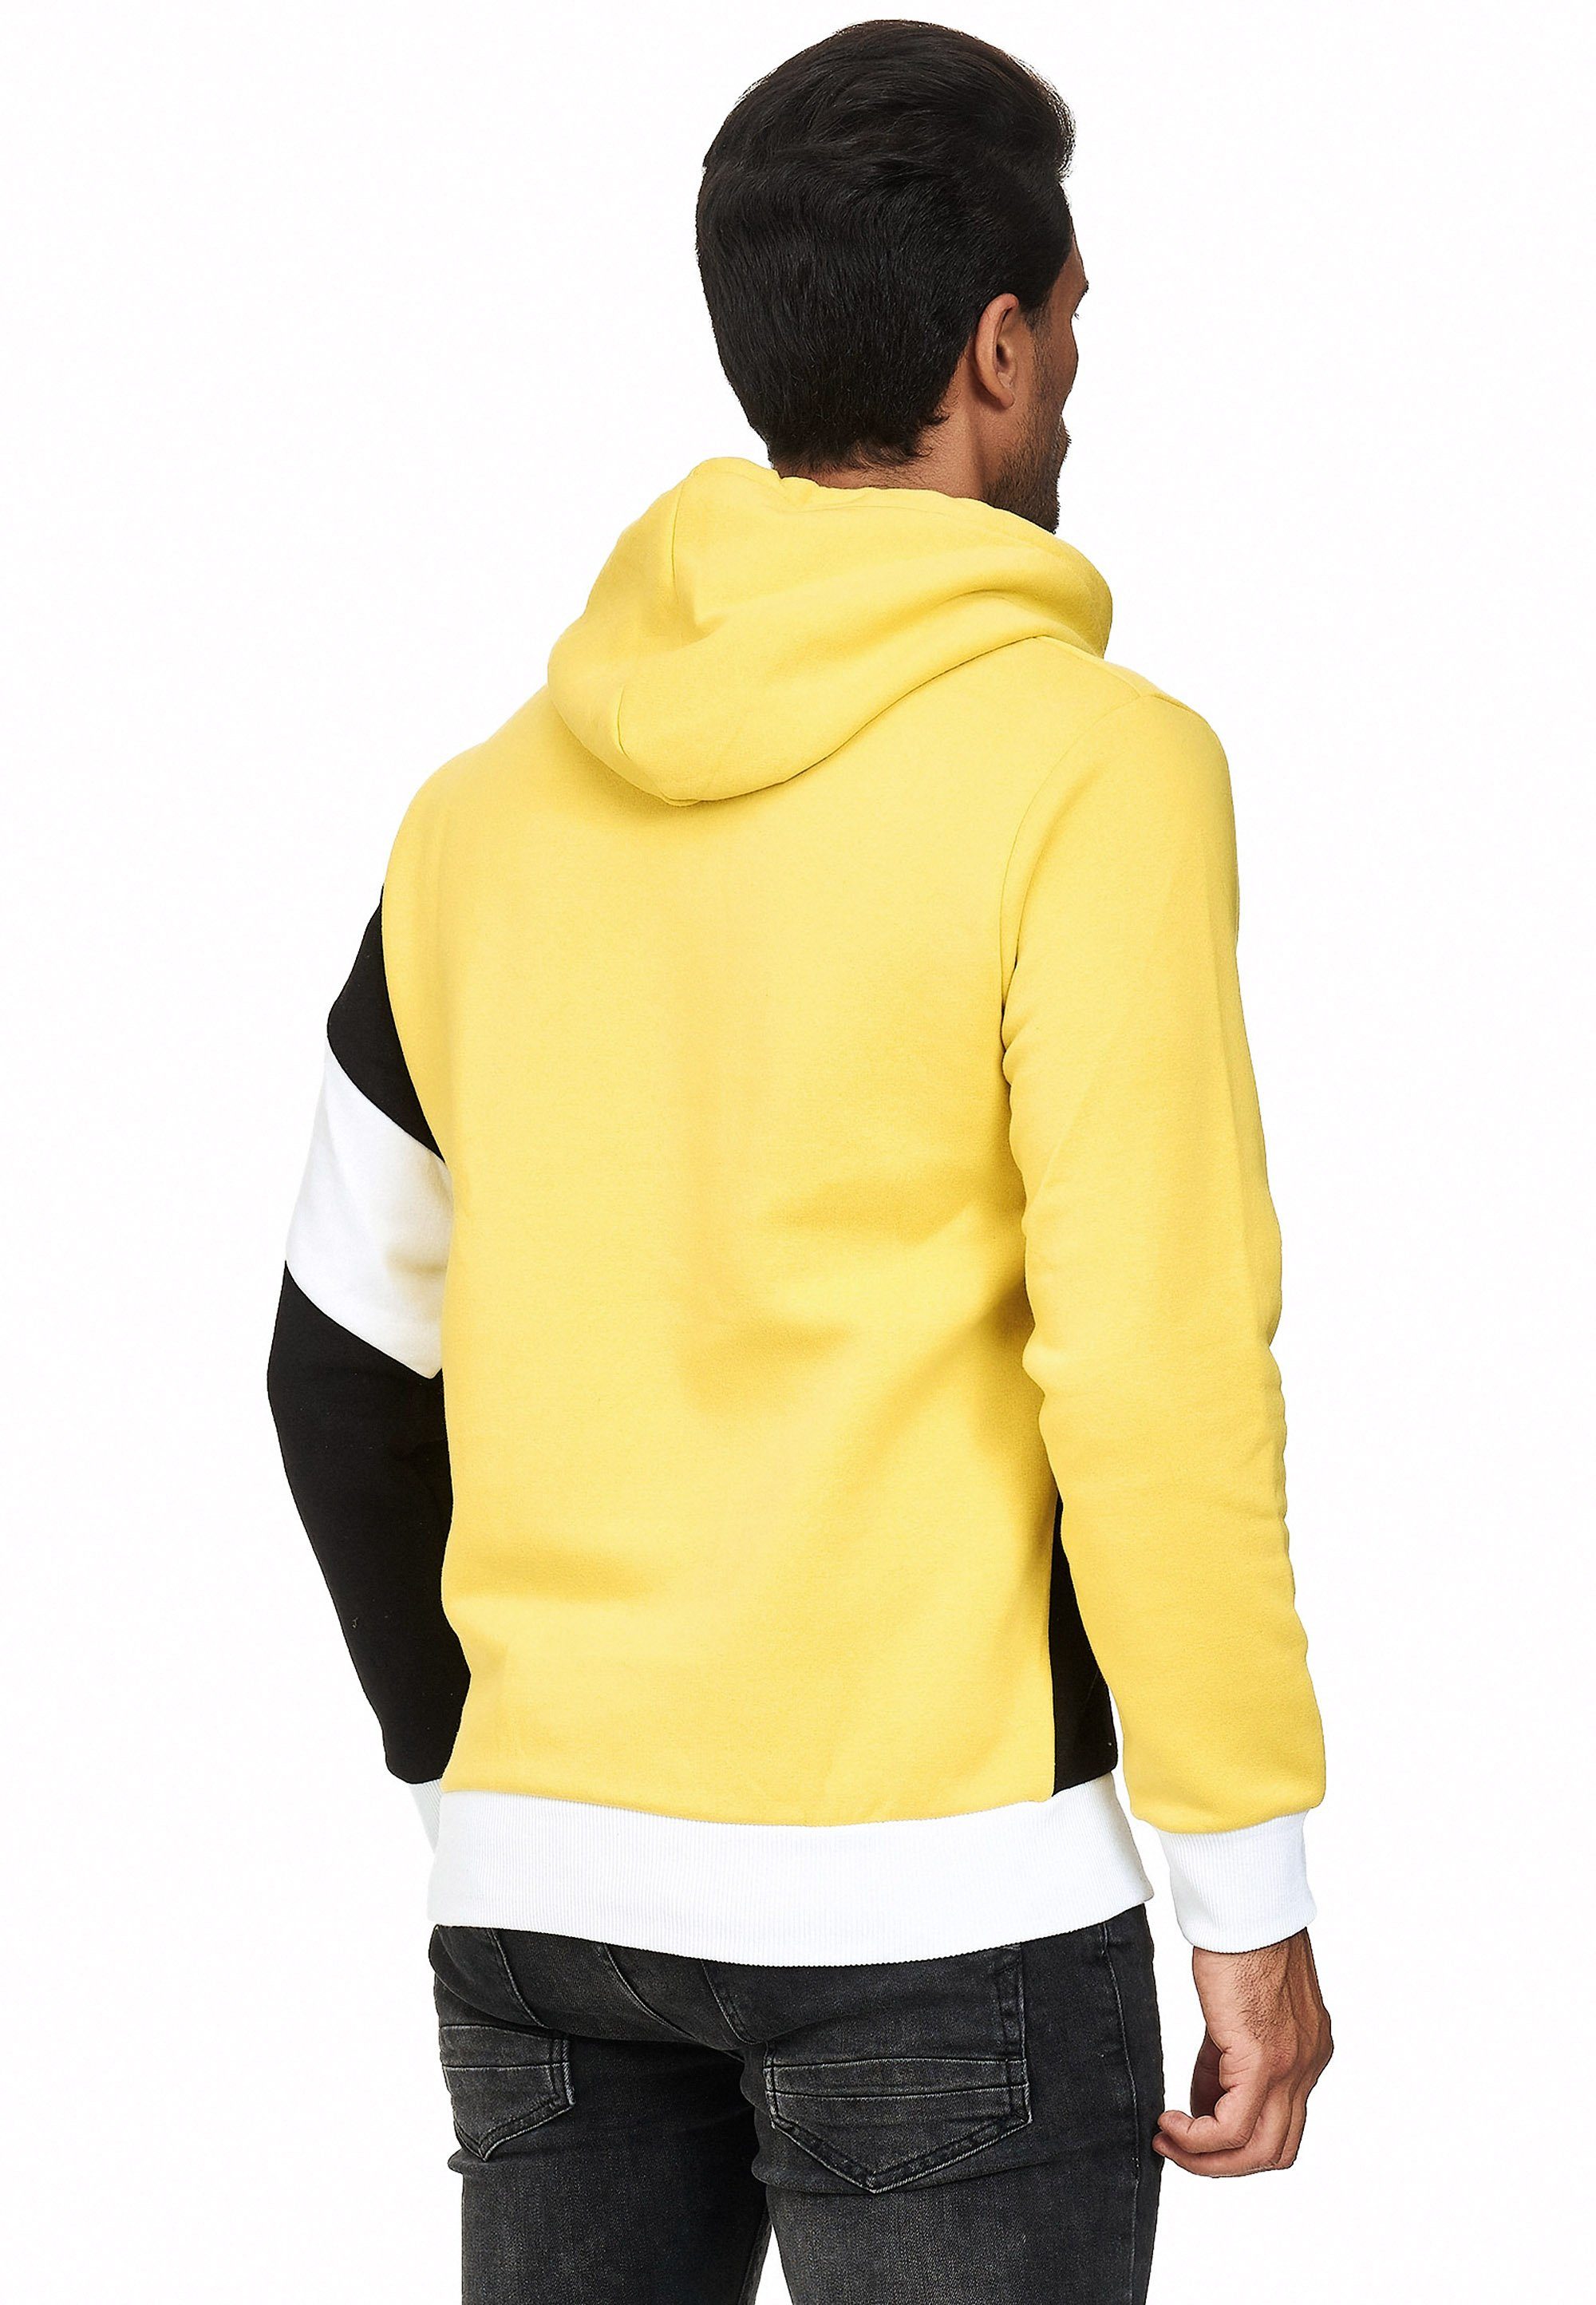 Rusty Neal Kapuzensweatshirt in sportlichem gelb-schwarz Design